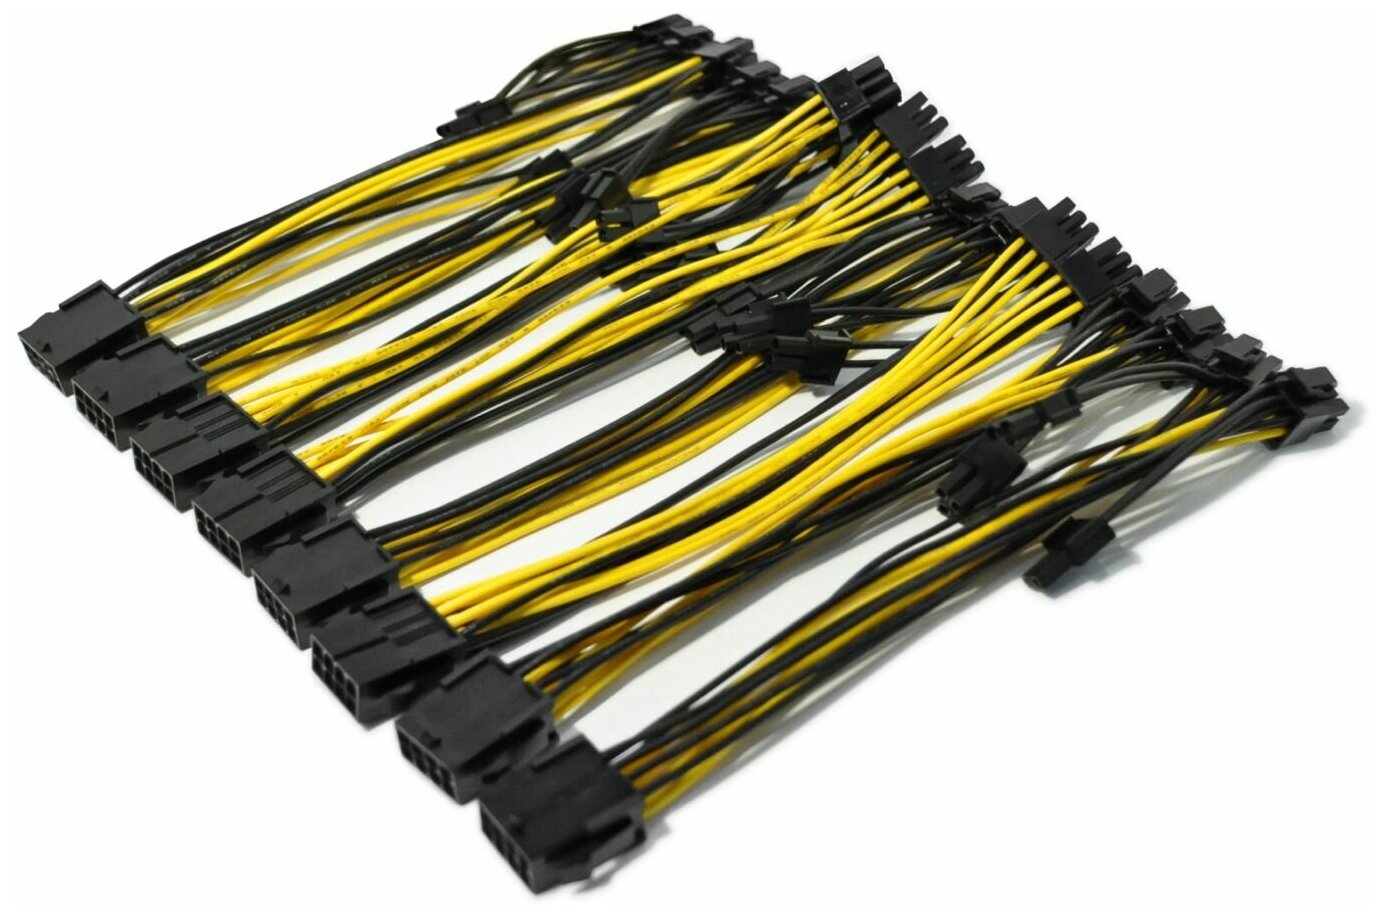 Переходник PCI-E 8 pin (6+2 pin) 22 см для видеокарты / 8-контактный GPU кабель разветвитель удлинитель питания для майнинга желтый (8 шт.)